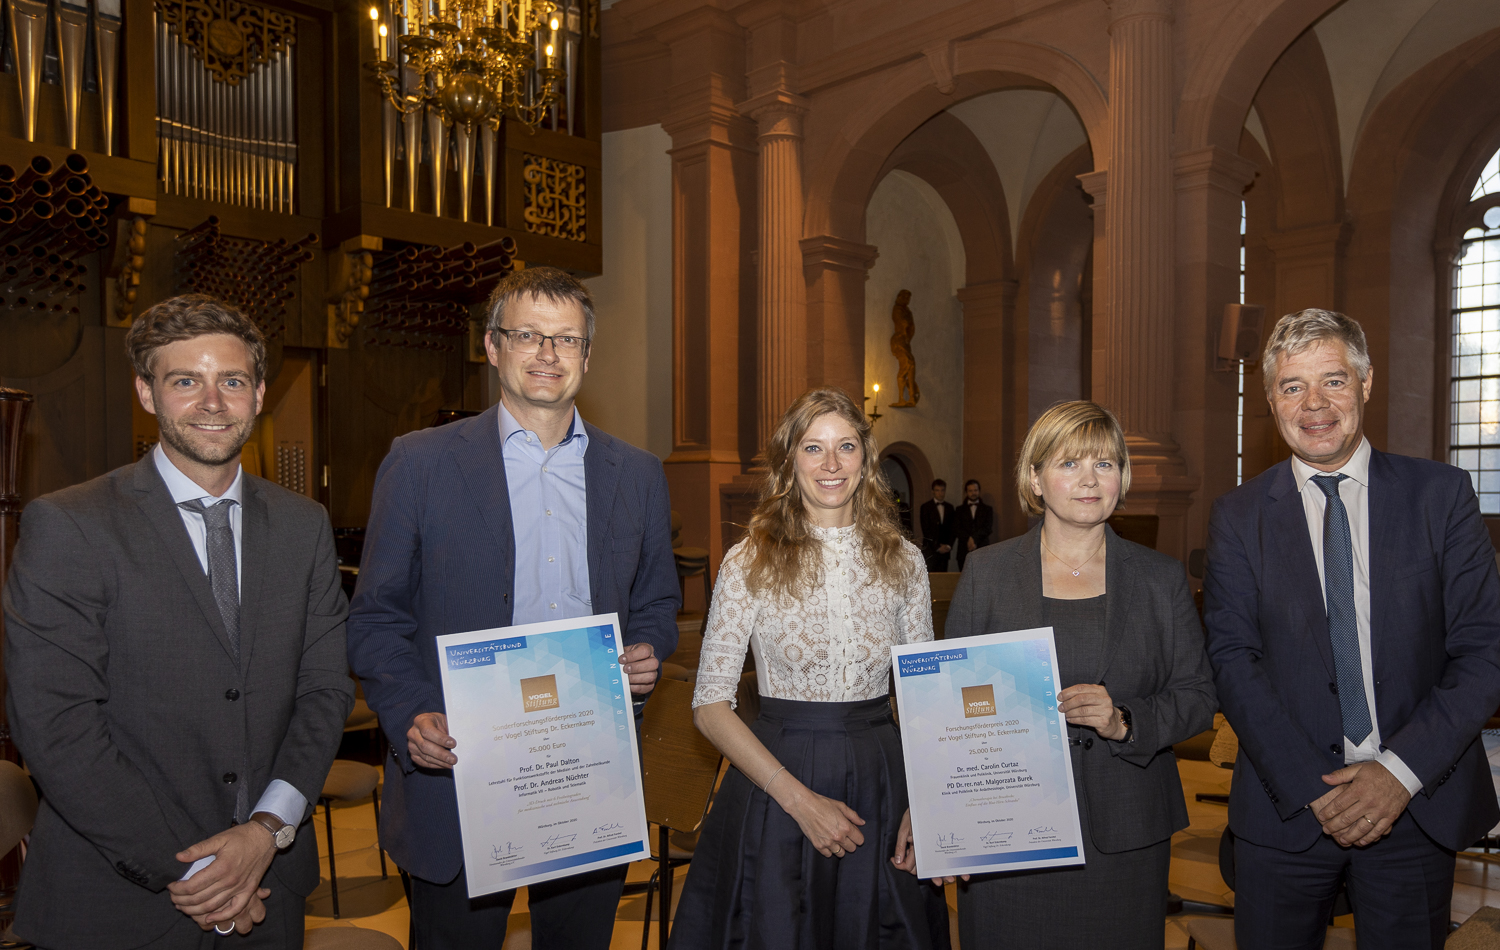 Die Gewinnerinnen und Gewinner der Forschungspreise. In der Mitte Dr. Carolin Curtaz, rechts neben ihr PD Dr. Malgorzata Burek.